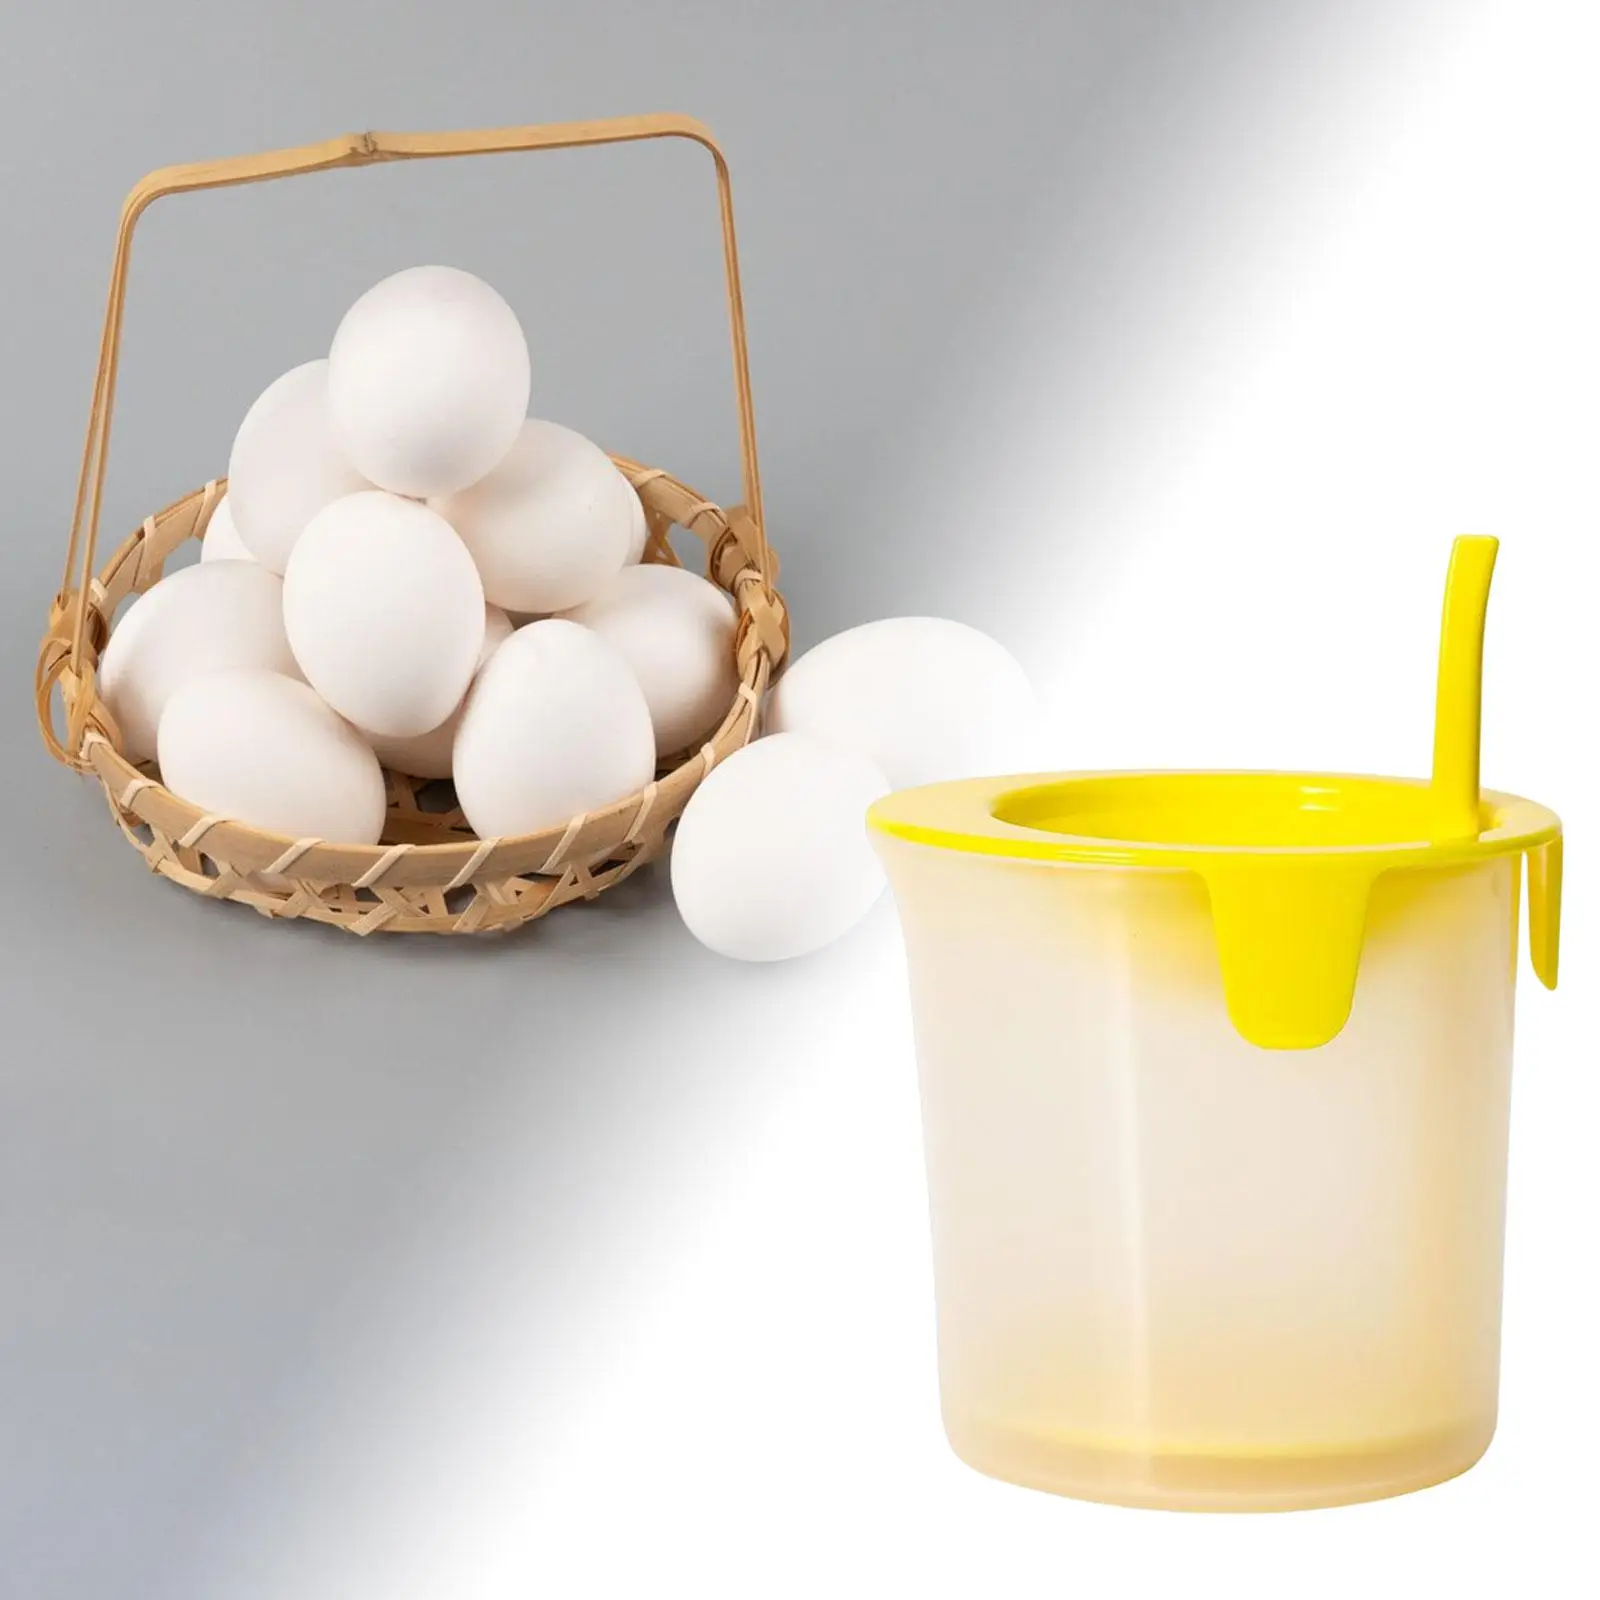 Egg White Divider Egg White Separator Multi Use Detachable Manual Hand Baking Assistant for Home